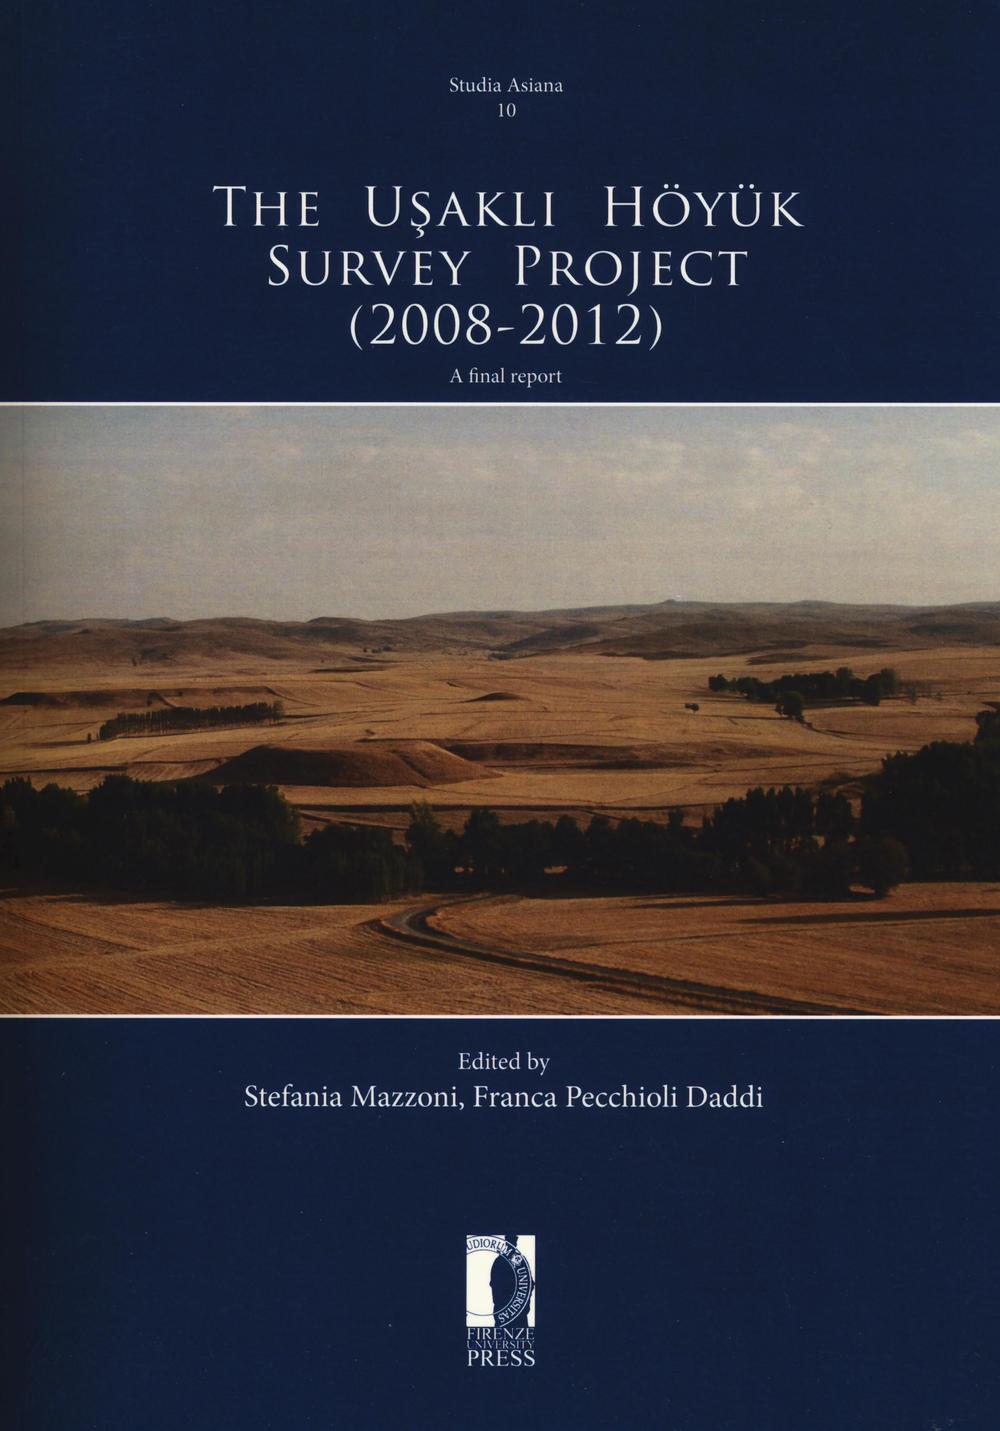 The Usakli Höyük survey project (2008-2012). A final report